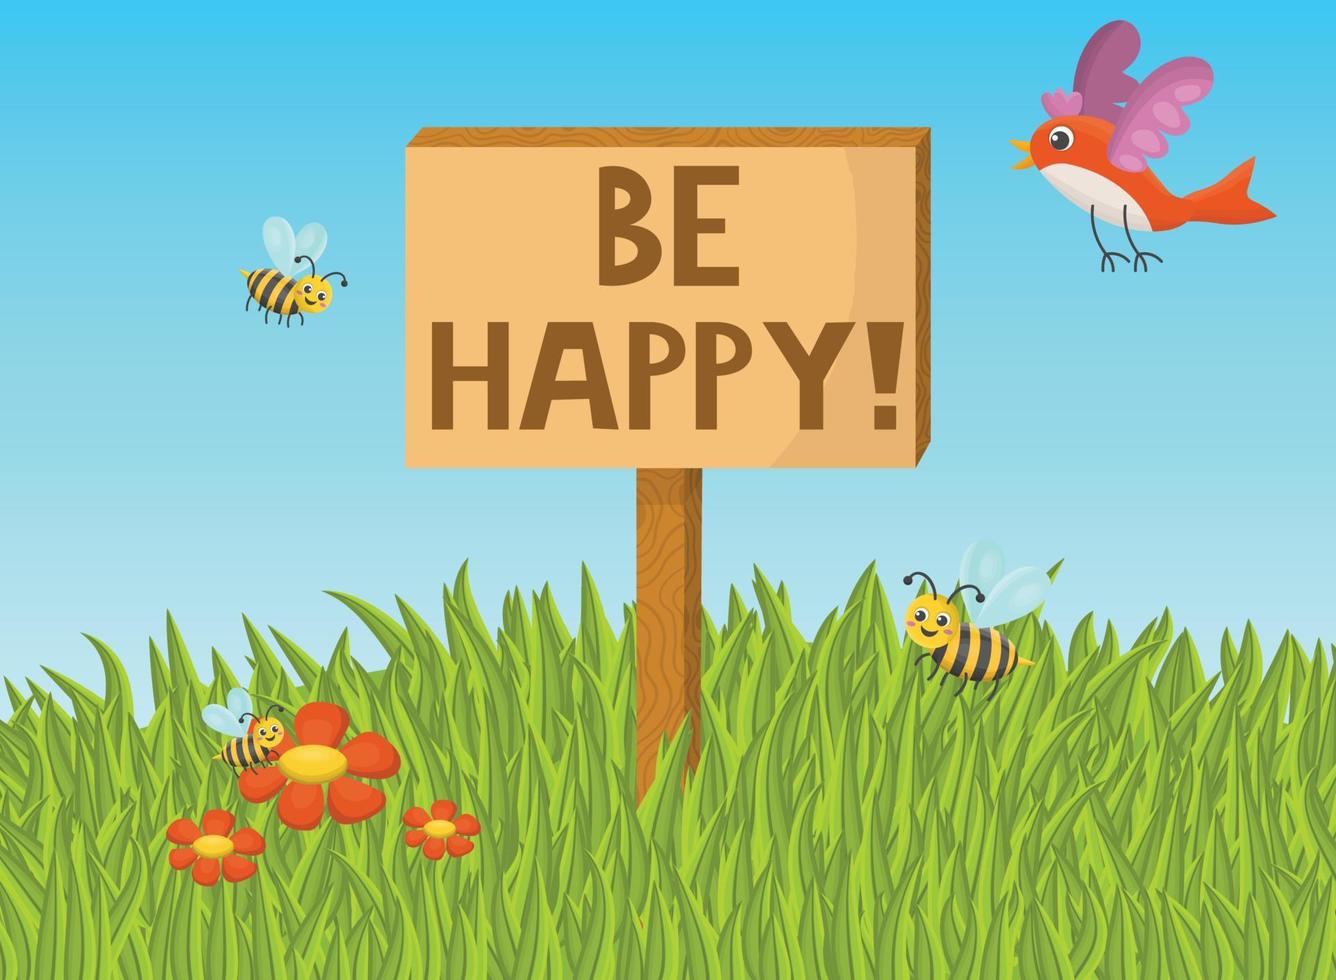 affiche de motivation avec le slogan soyez heureux sur un panneau d'affichage en bois. bonne journée d'été ensoleillée. oiseau, abeilles, prairie, herbe et fleurs de marguerite rouge. vecteur